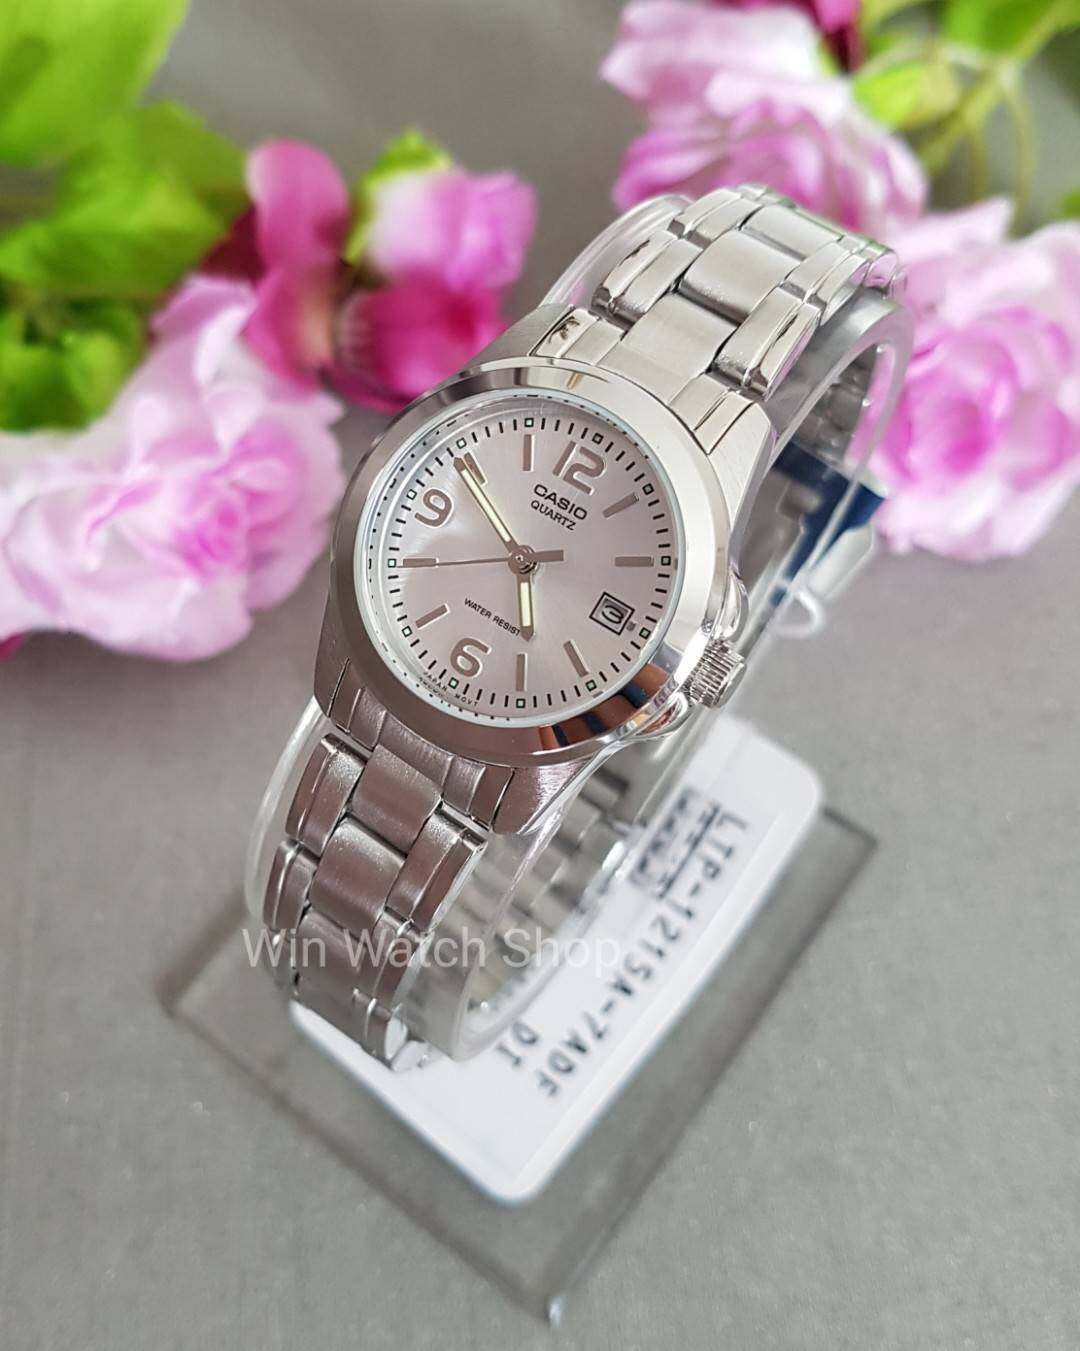 Win Watch Shop Casio นาฬิกาข้อมือผู้หญิง สายสแตนเลส รุ่น LTP-1215A-7ADF-ของแท้ ประกันศูนย์ 1 ปีเต็ม (ส่งฟรี เก็บเงินปลายทางได้)